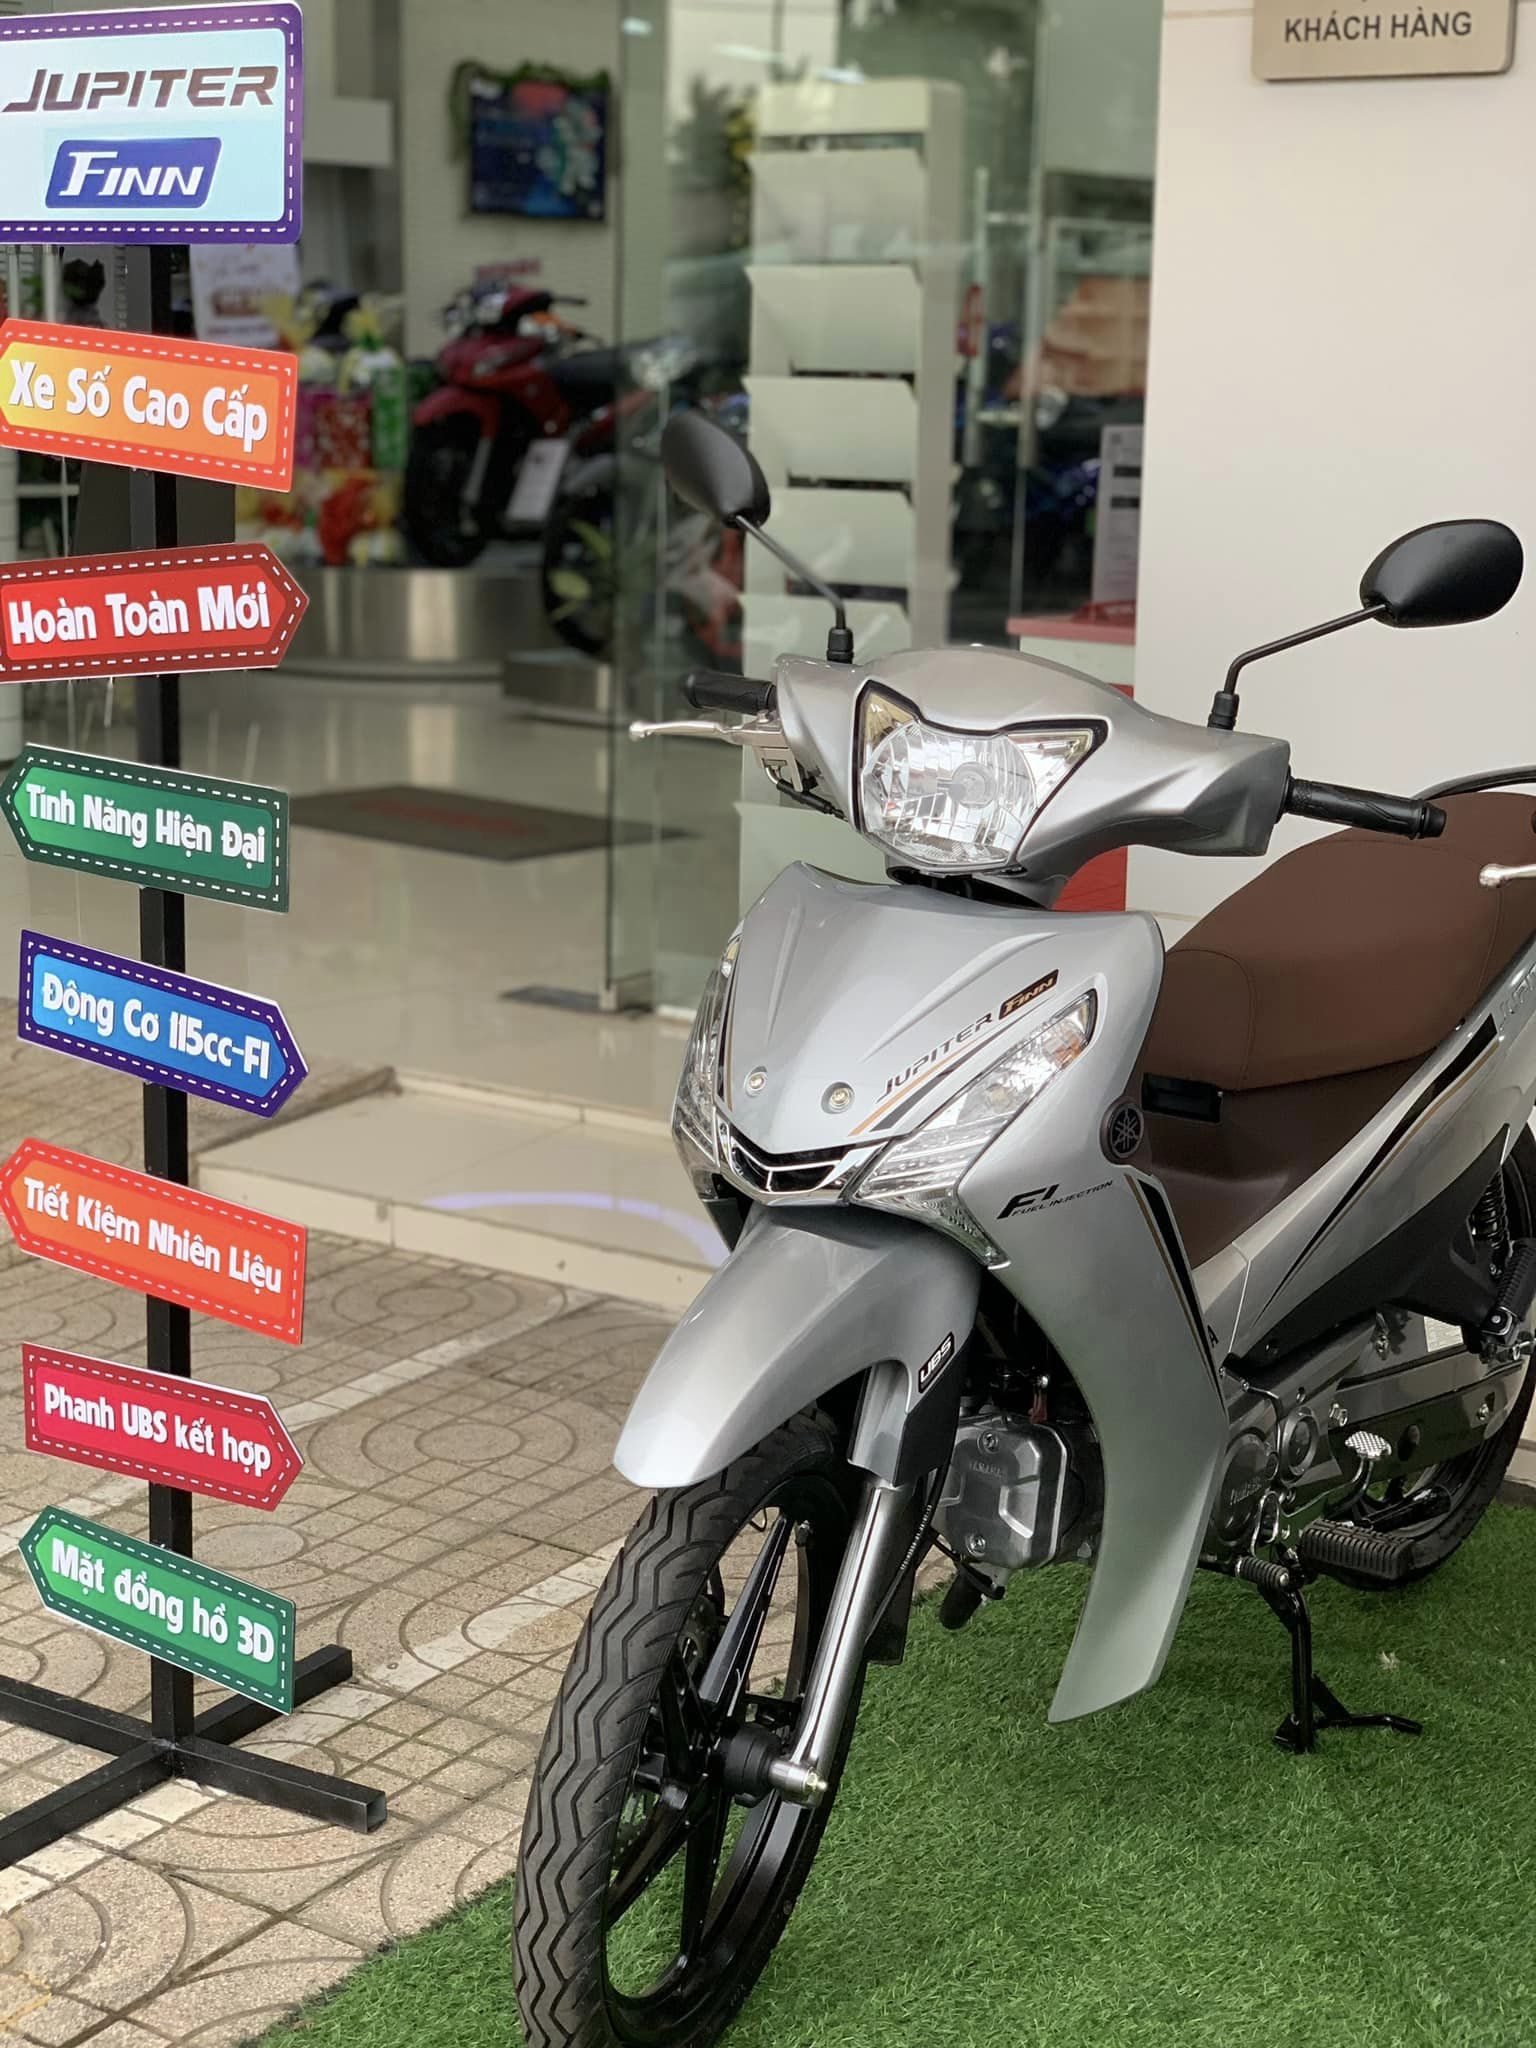 Yamaha Jupiter Finn ra mắt Việt Nam Giá 275 triệu đồng ăn xăng như  ngửi cạnh tranh Honda Future